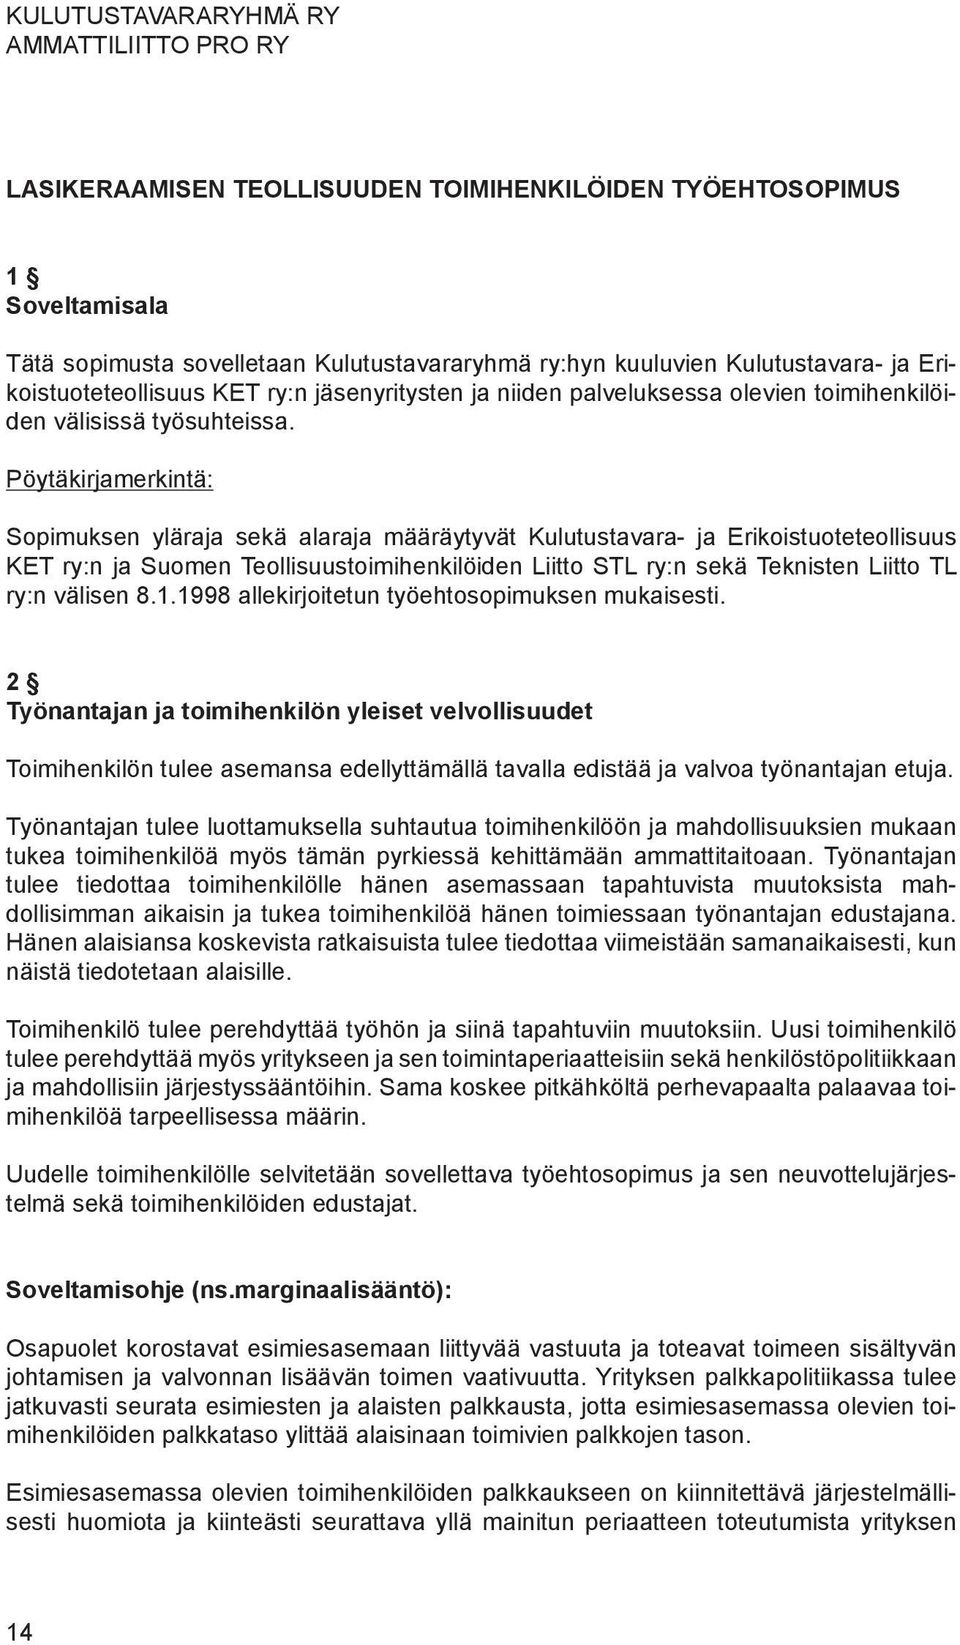 Pöytäkirjamerkintä: Sopimuksen yläraja sekä alaraja määräytyvät Kulutus tavara- ja Erikoistuote teolli suus KET ry:n ja Suomen Teollisuus toimi henkilöiden Liitto STL ry:n sekä Teknis ten Liitto TL